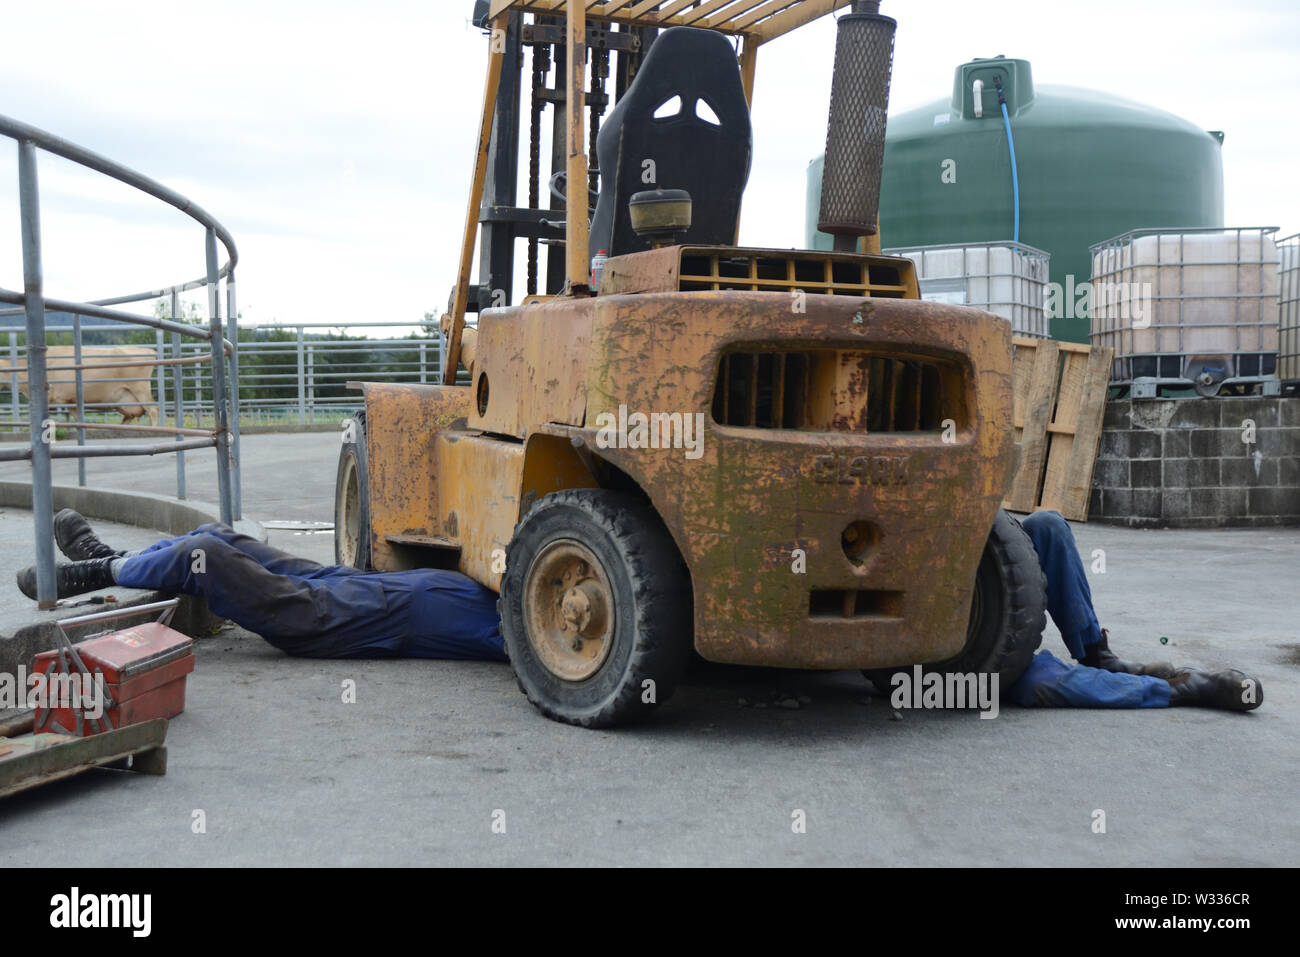 Deux mécaniciens travailler sous un chariot stationné jusqu'à une cour laitiers Banque D'Images